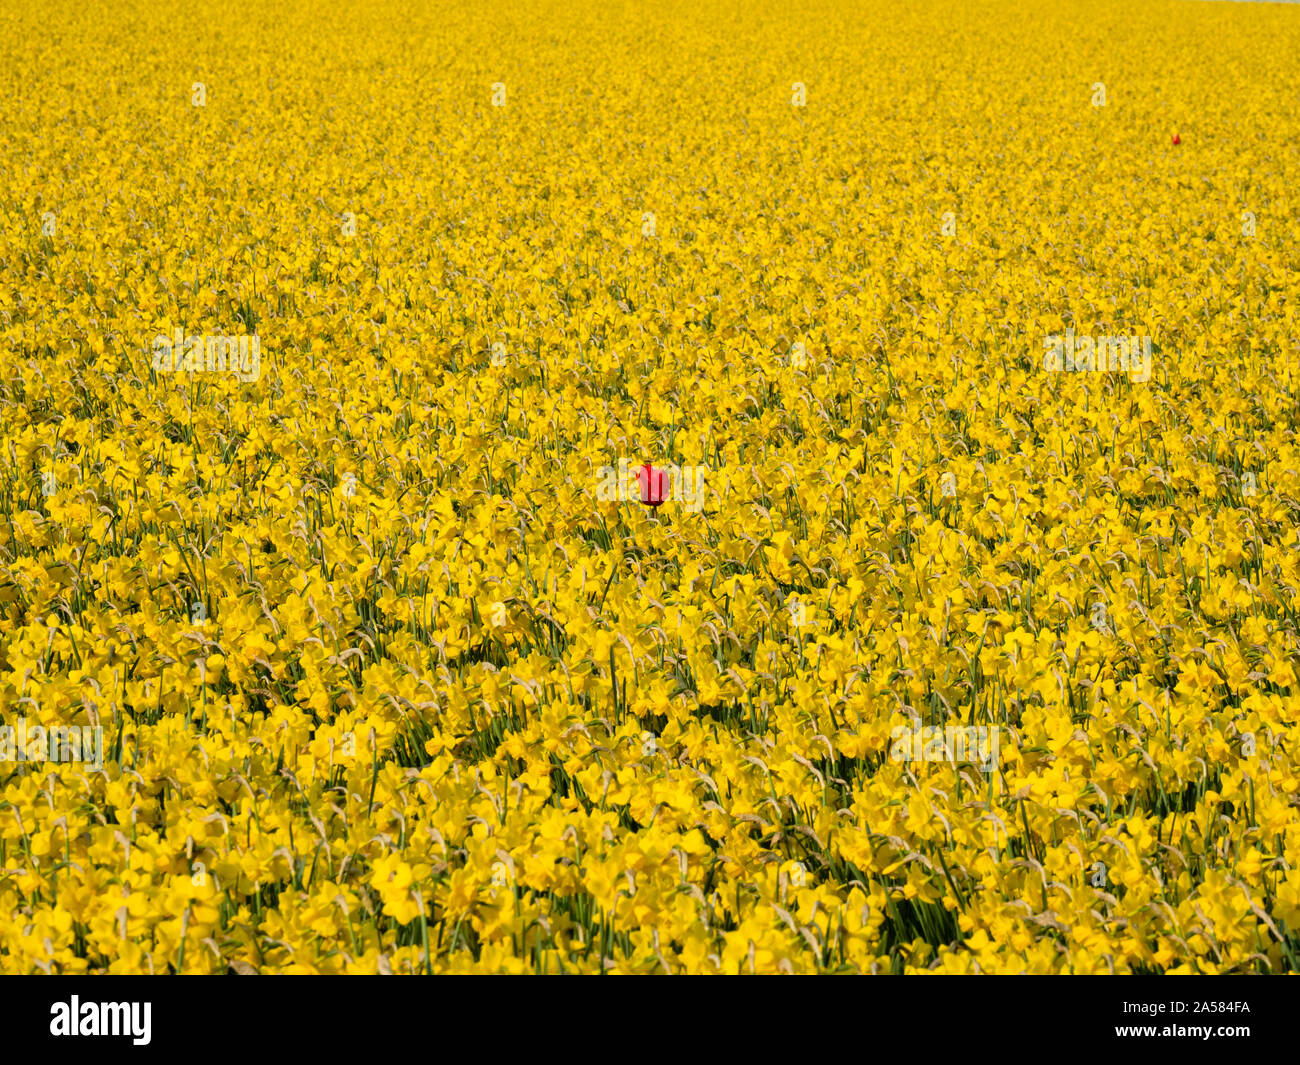 Un champ de tulipes rouges chez les plantes, narcisse jaune de Hollande du Nord, Pays-Bas Banque D'Images